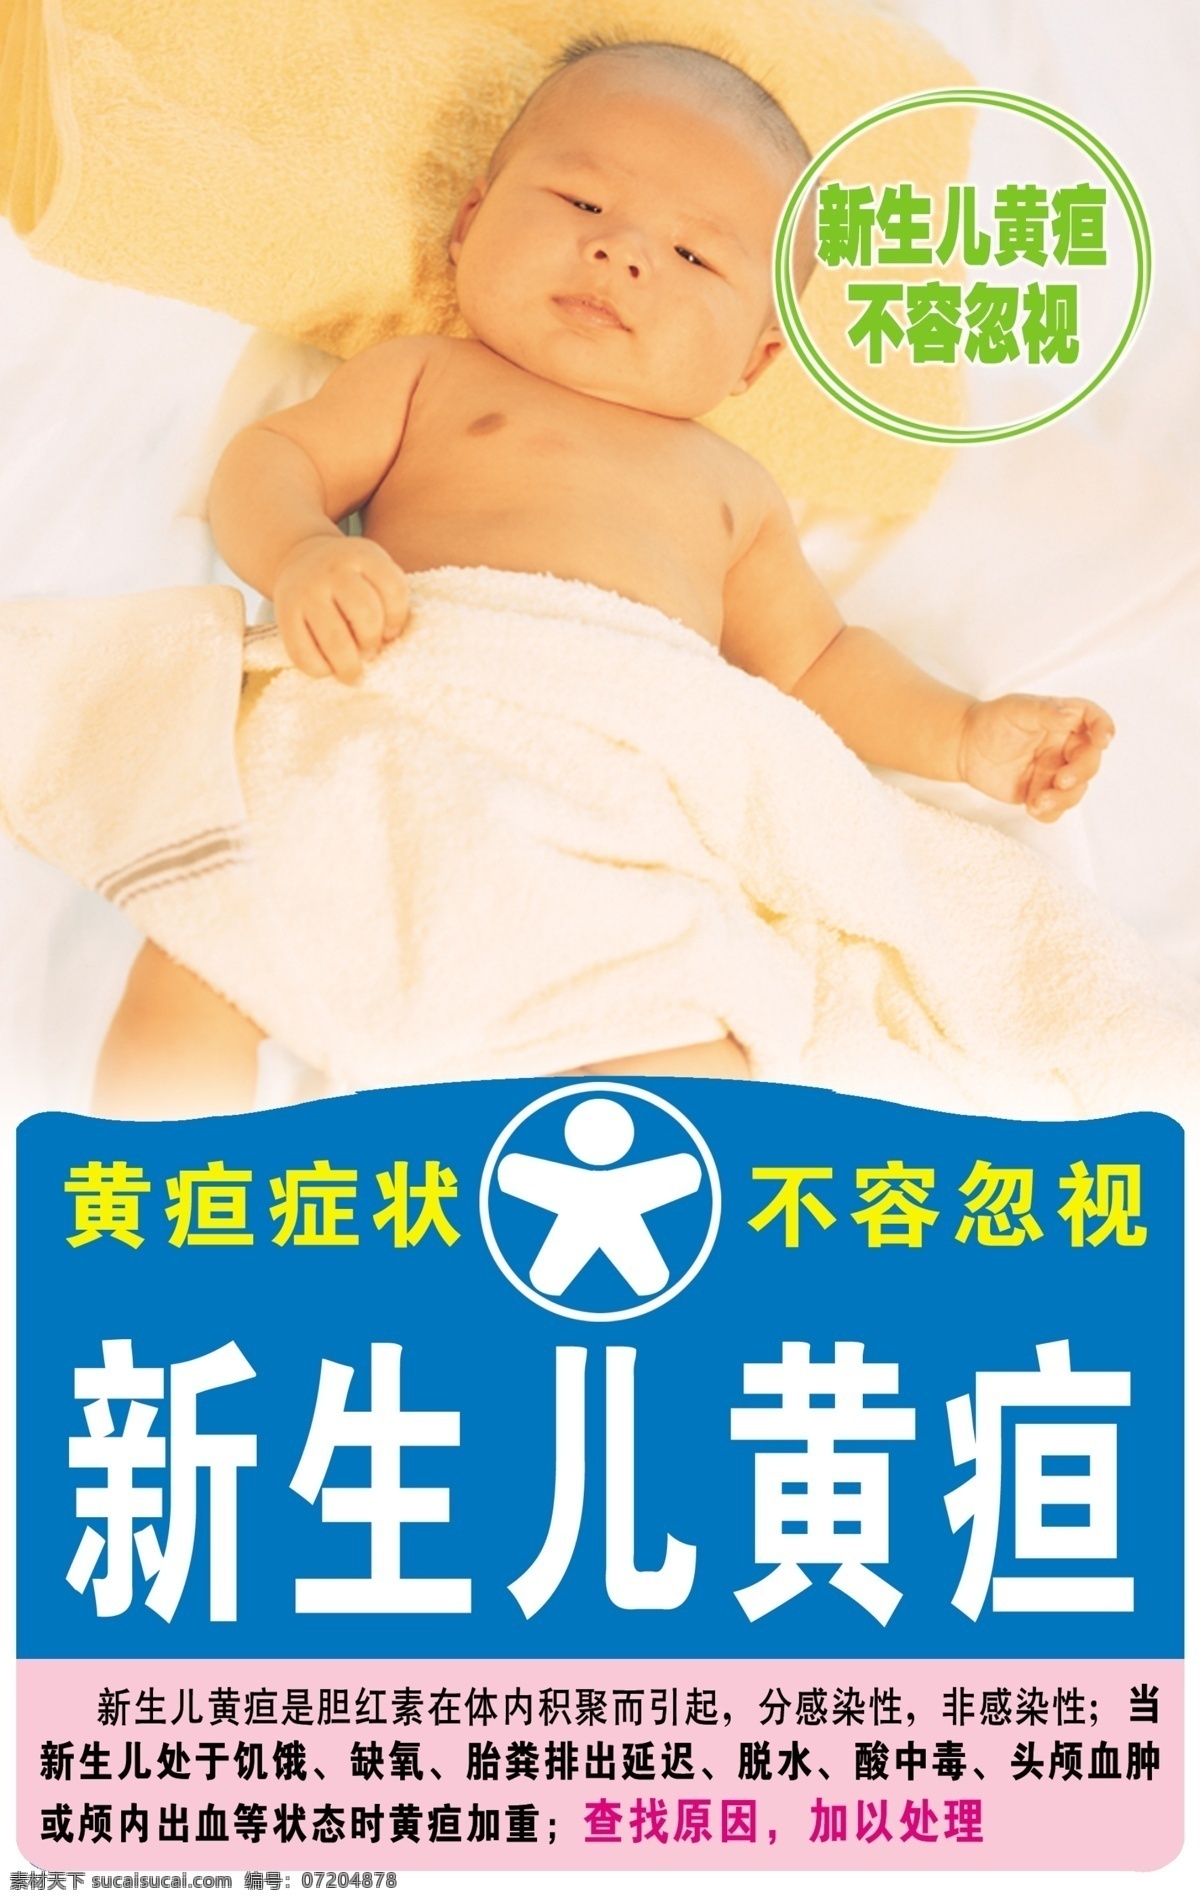 儿童保健 知识 宣传画 儿童 保健 护理 新生儿 黄疸 症状 广告设计模板 源文件